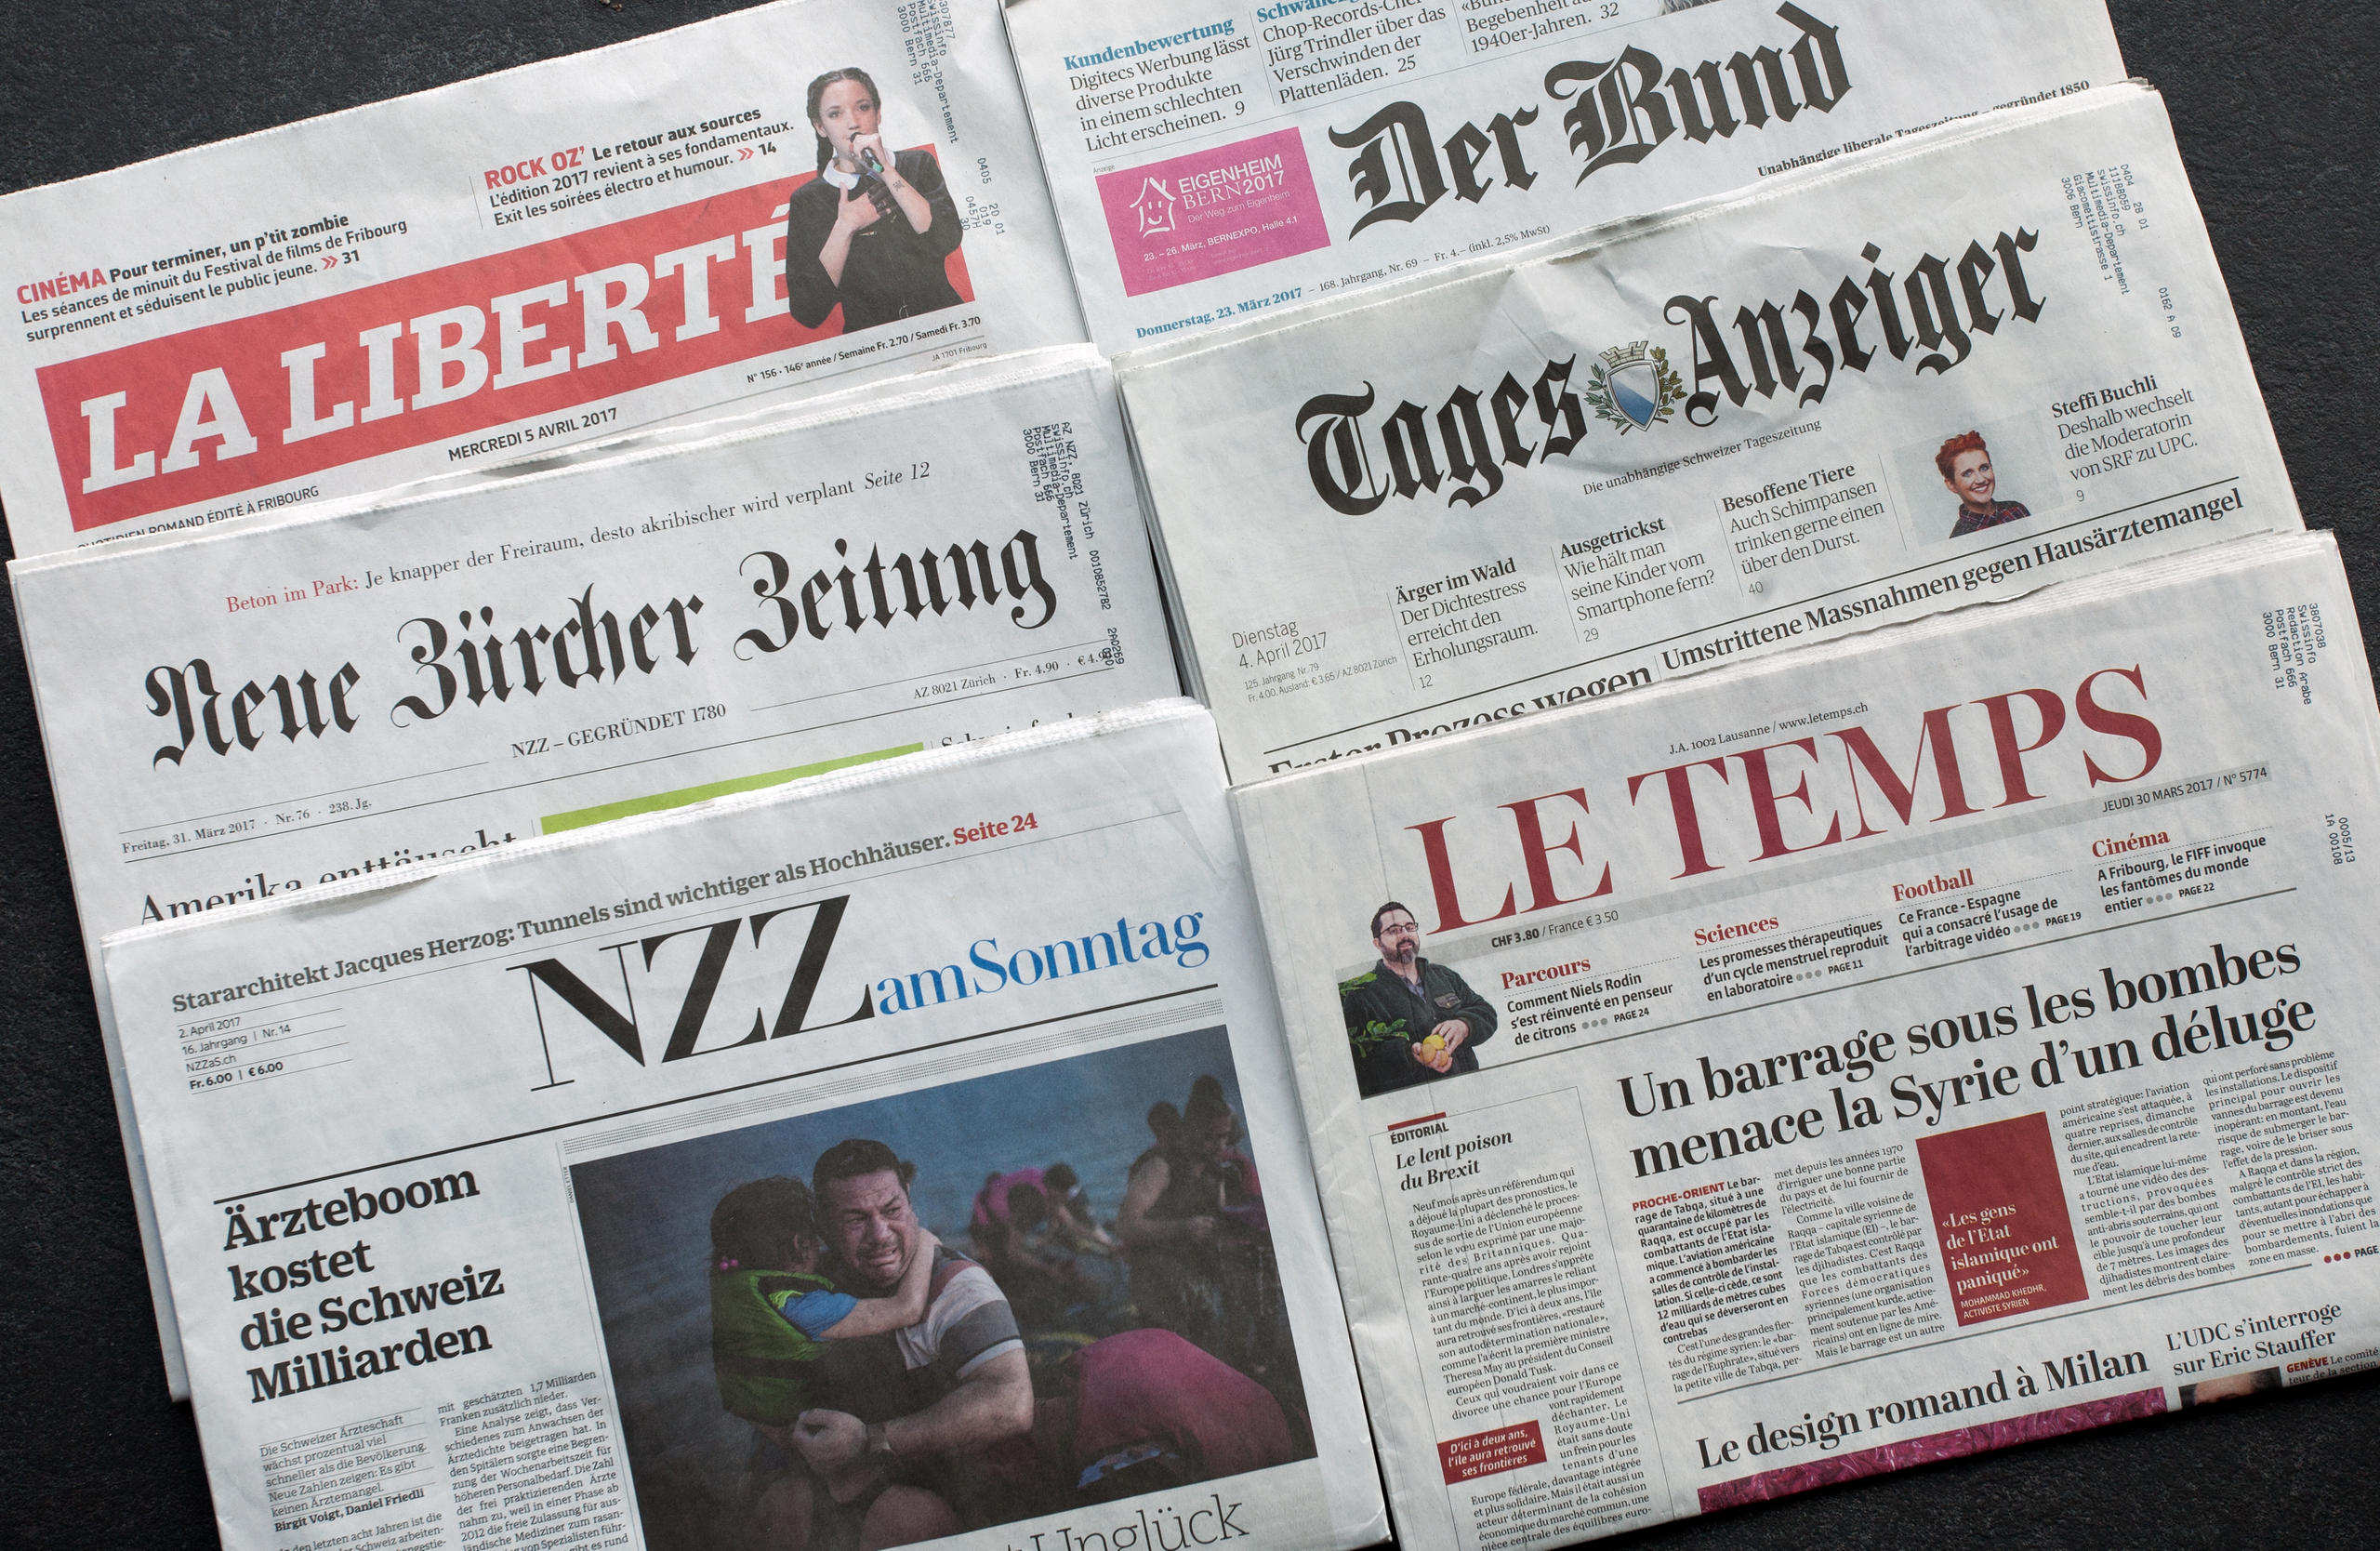 الصفحات الأولى لعدد من الصحف اليومية السويسرية بالألمانية والفرنسية